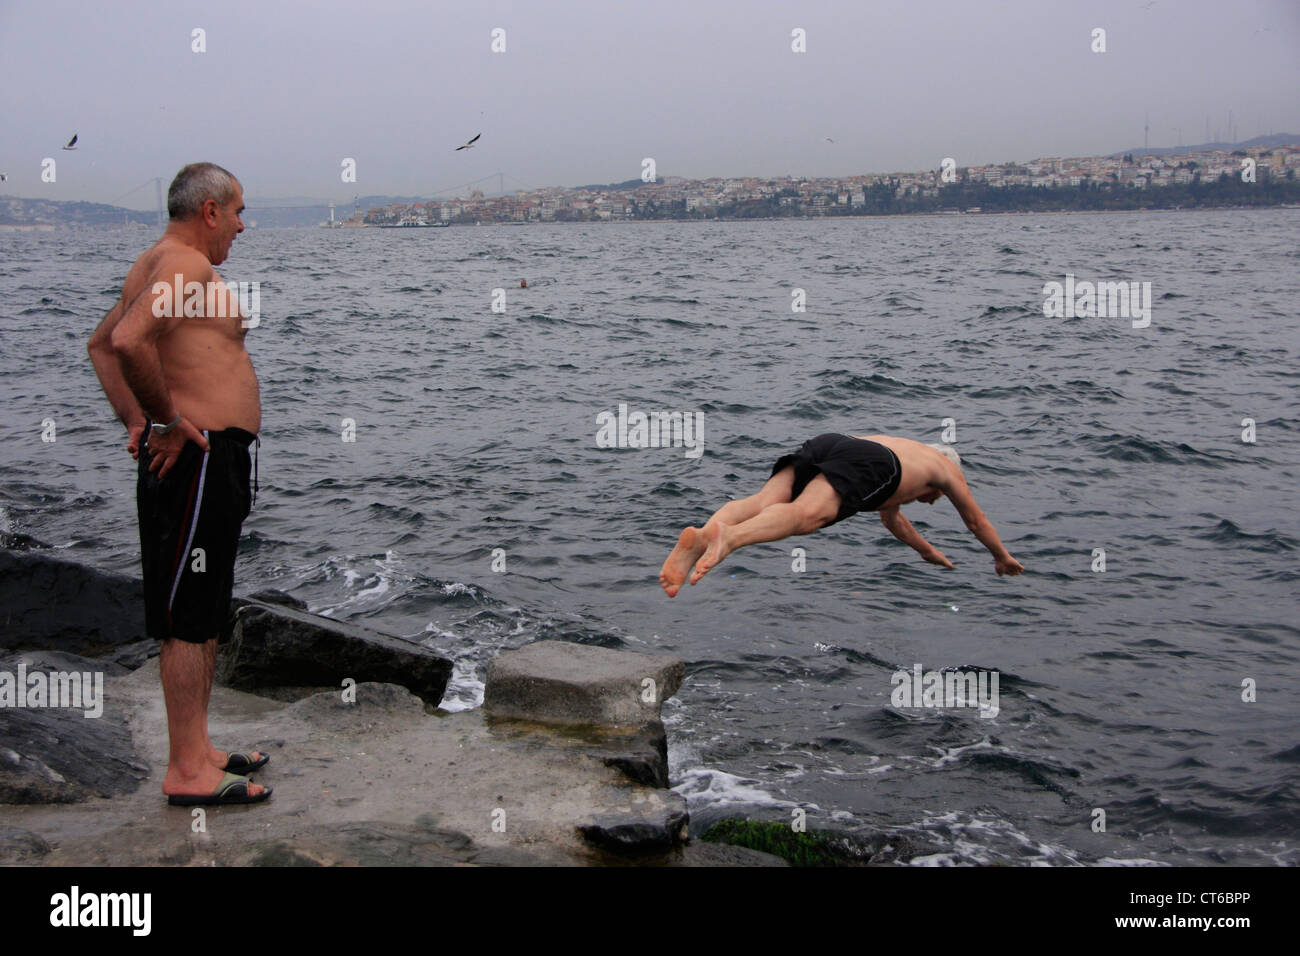 Bagno turco uomo immersioni subacquee in lo stretto del Bosforo, Istanbul, Turchia Foto Stock